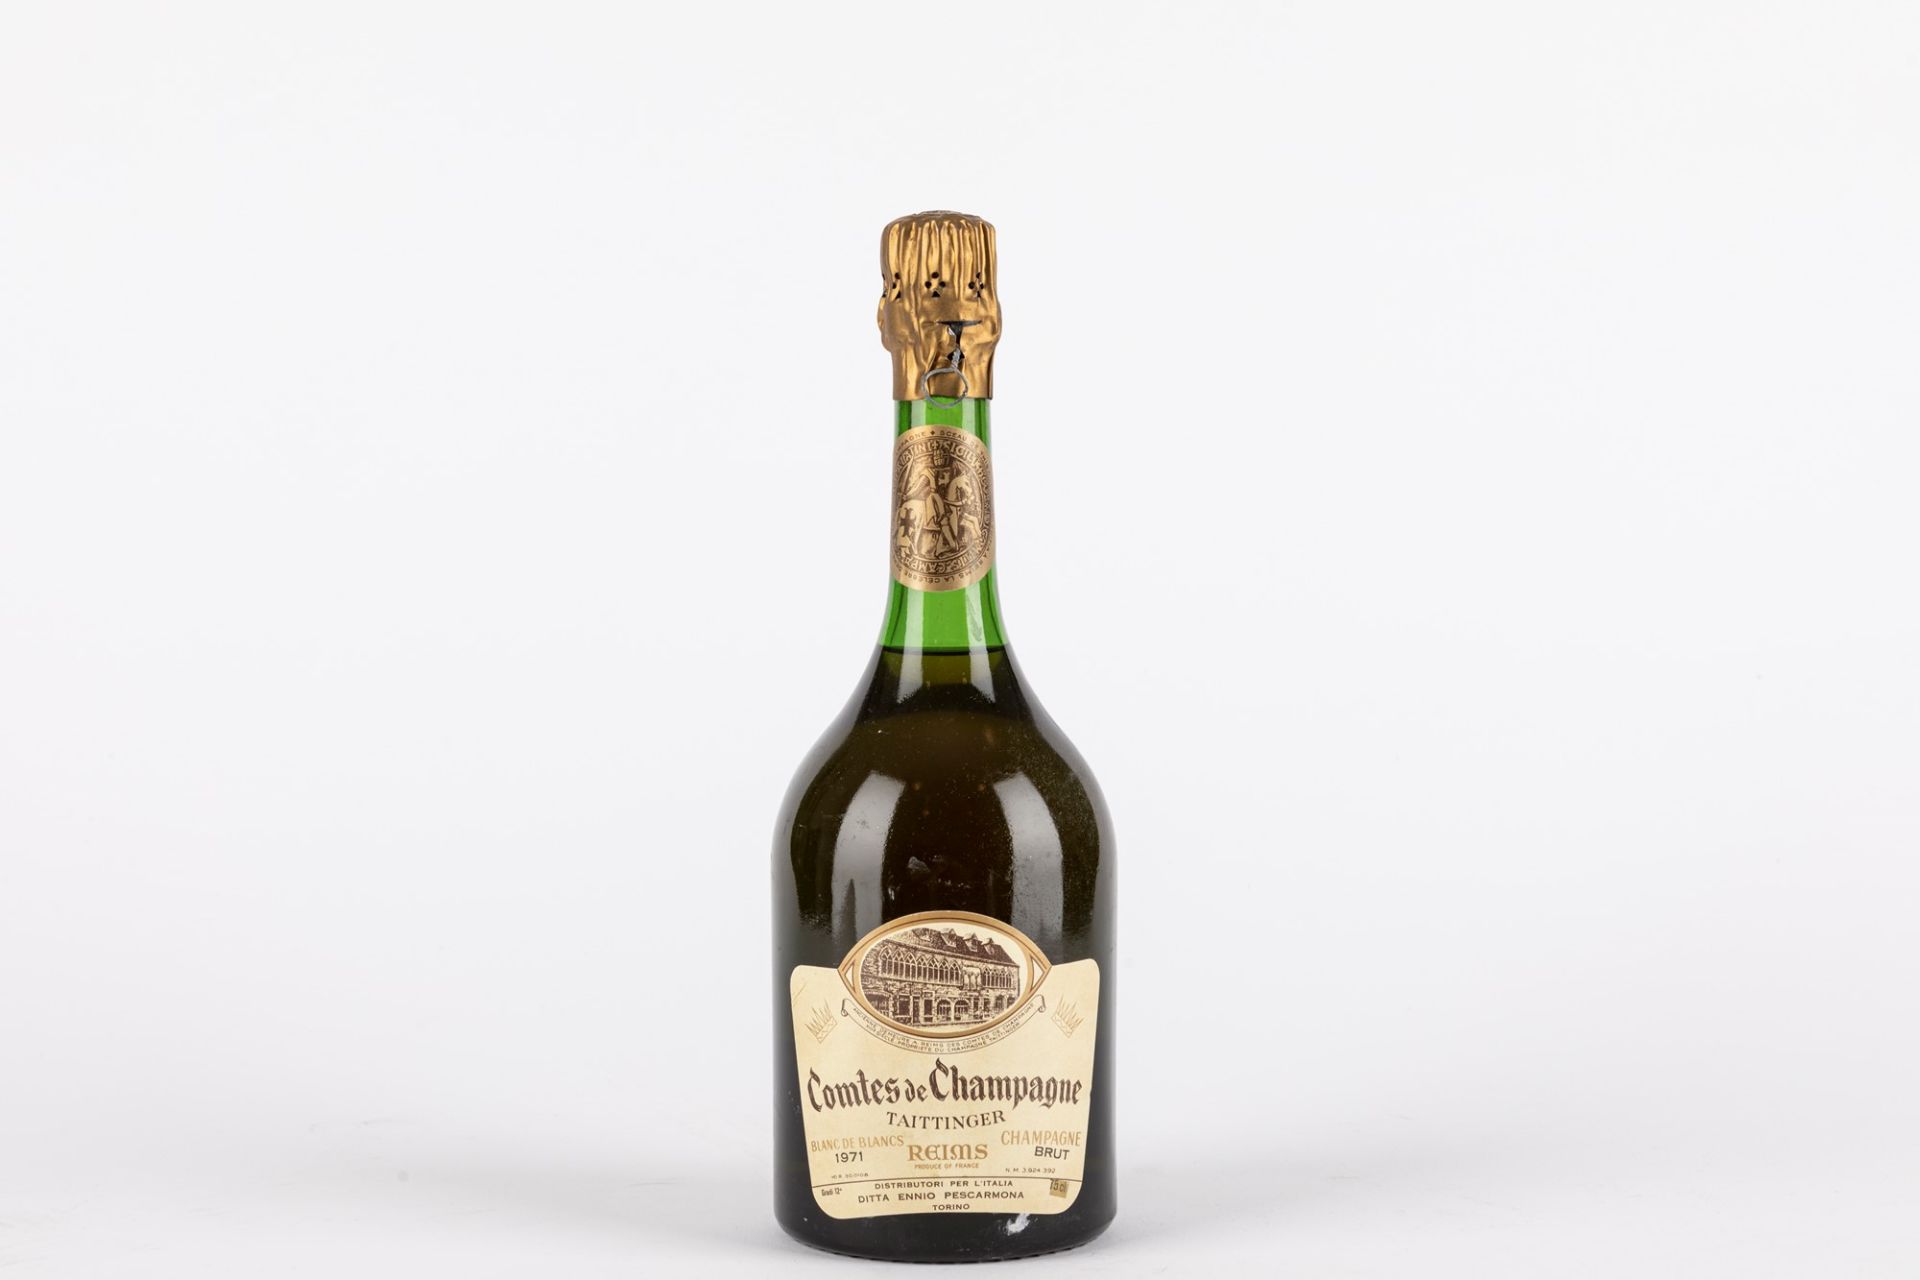 France - Champagne / Taittinger Comtes de Champagne Blanc de Blancs 1971